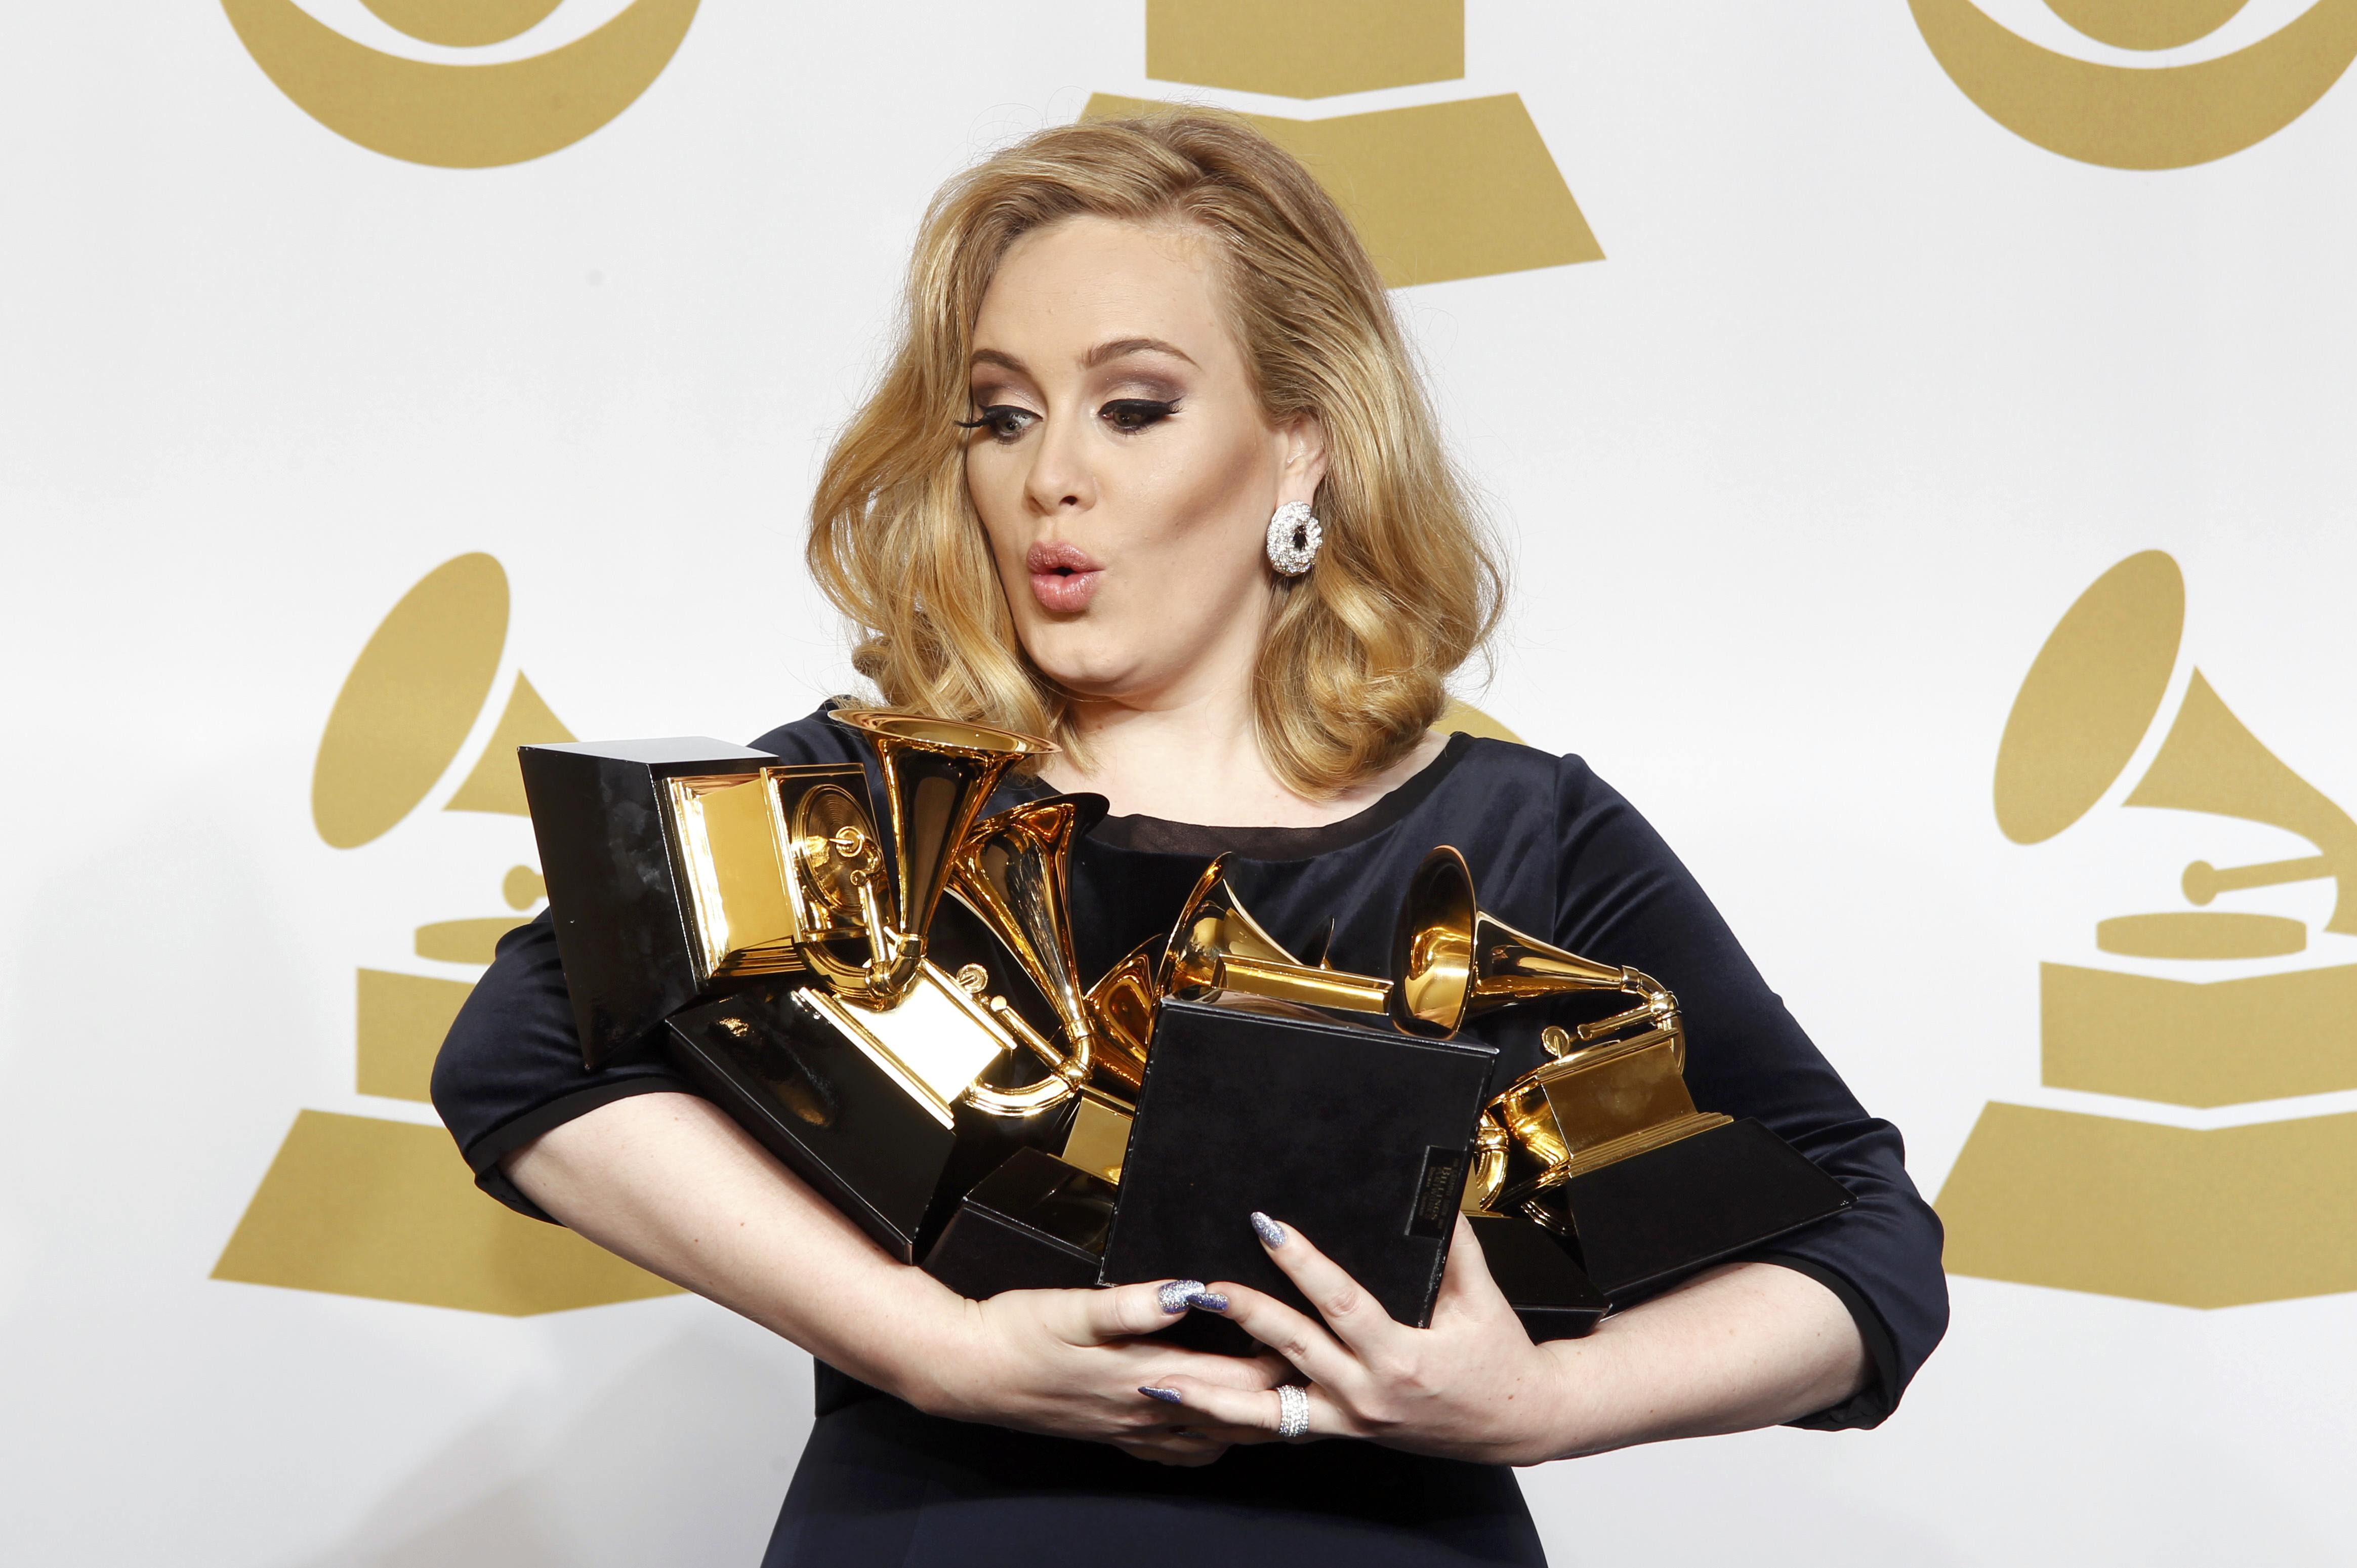 Αντέλ: Η νικήτρια των φετινών Grammy